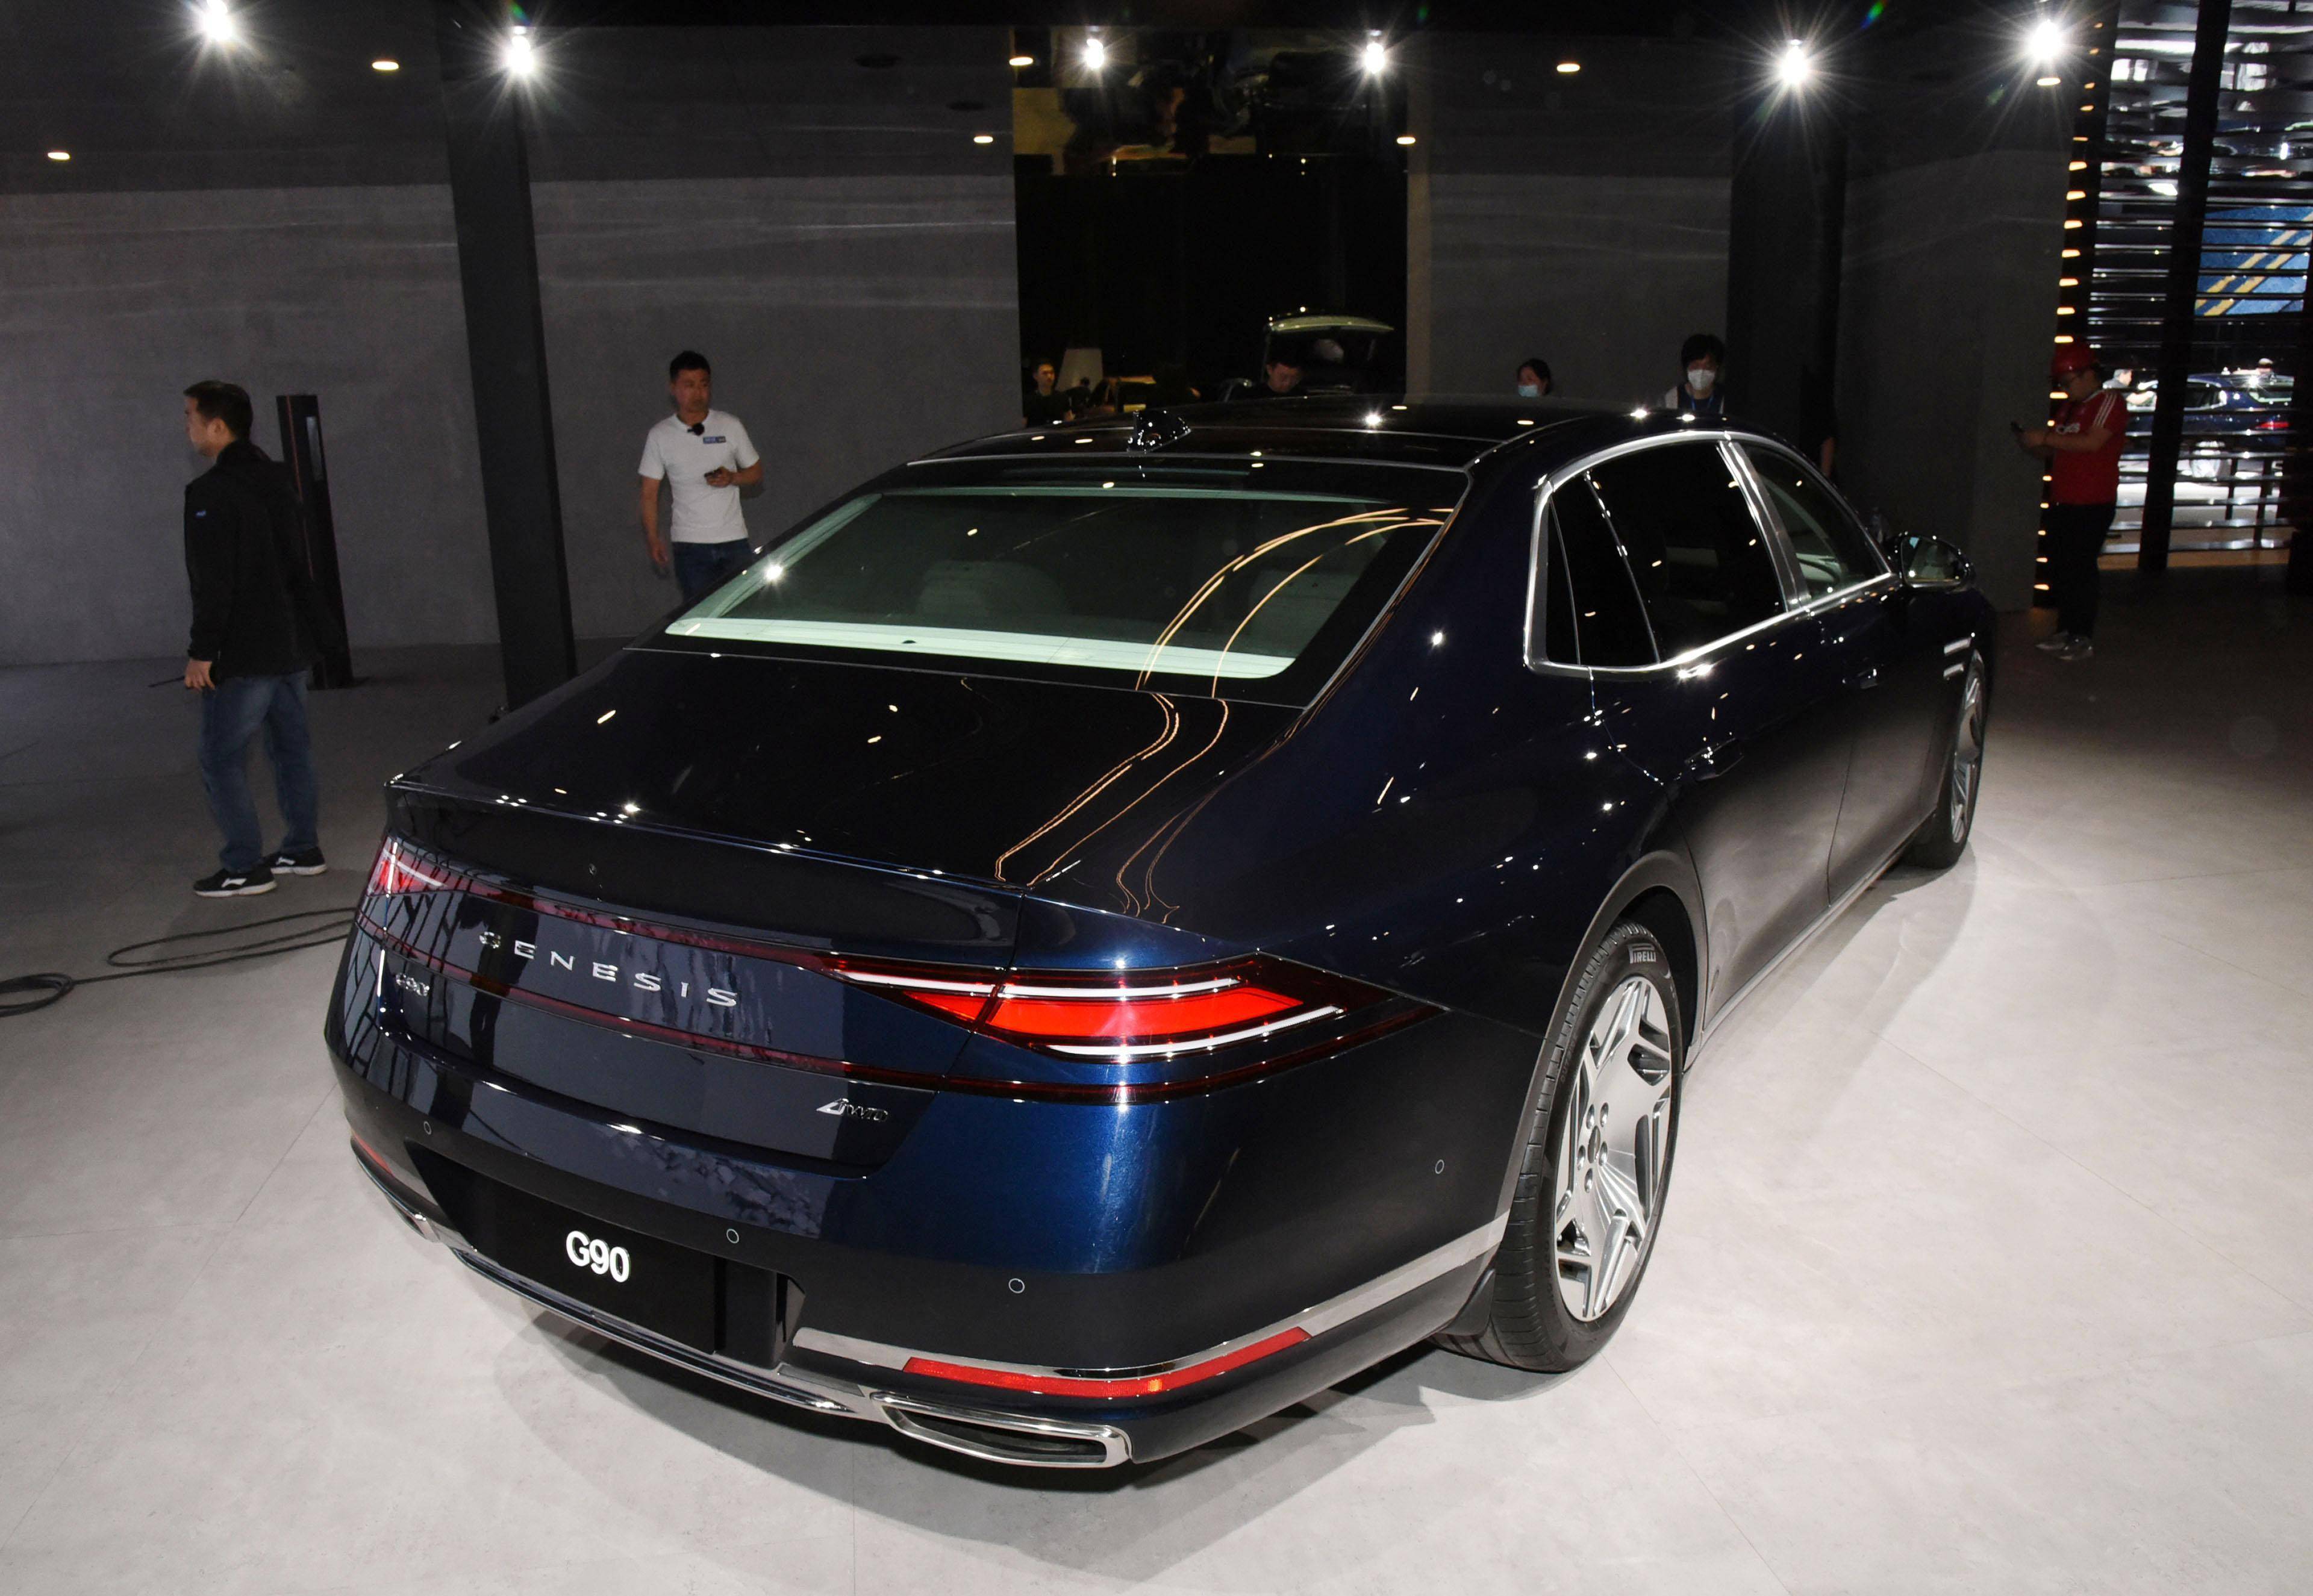 捷尼赛思g90,对标奔驰s级,8月上市,预售718万元起